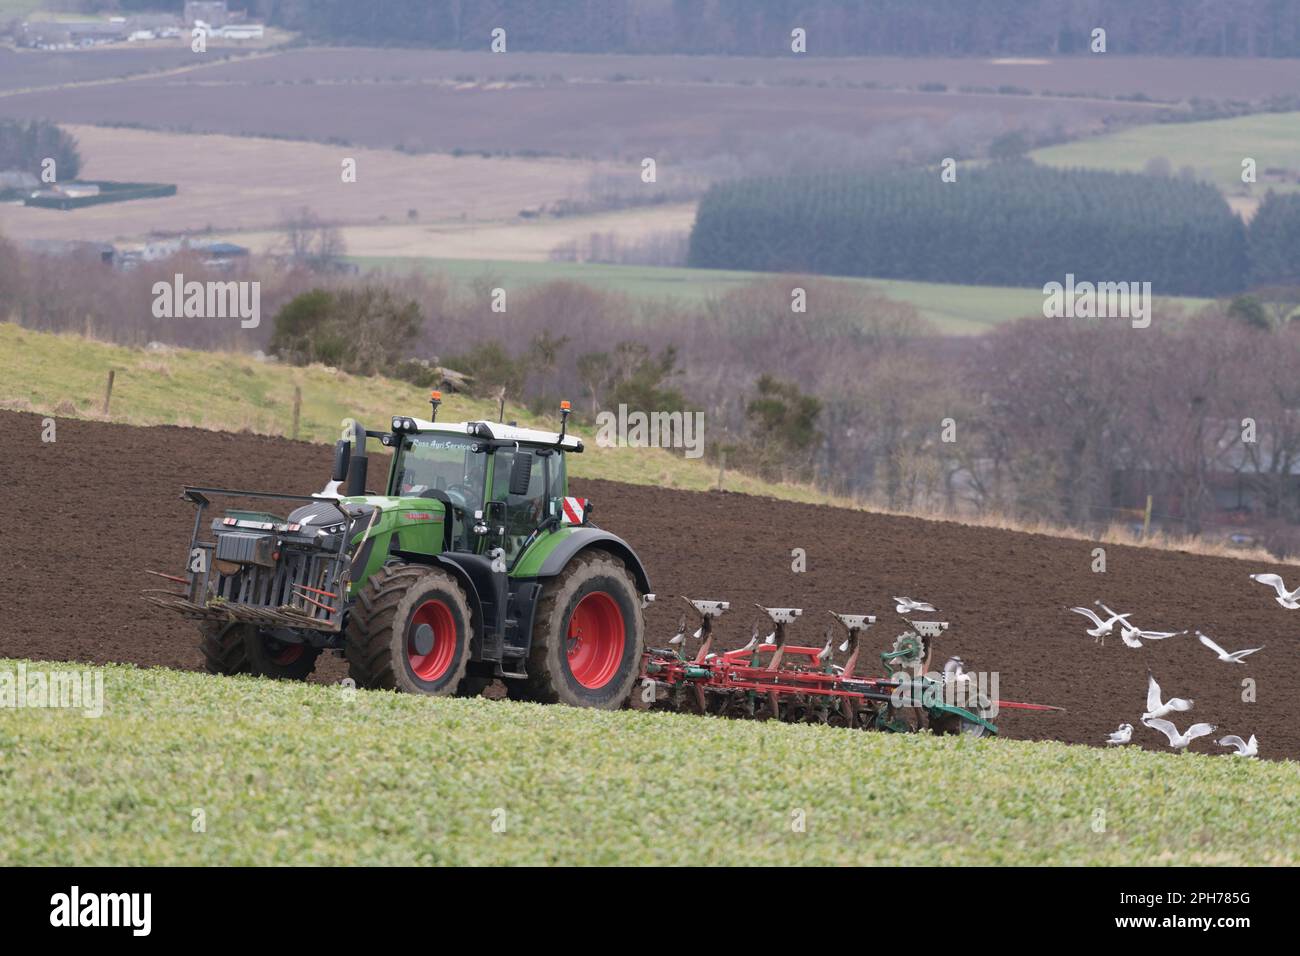 Möwen folgen einem Fendt Tractor & Kverneland Reversible Plough beim Pflügen in Gründung (Vetch) im Frühling Stockfoto